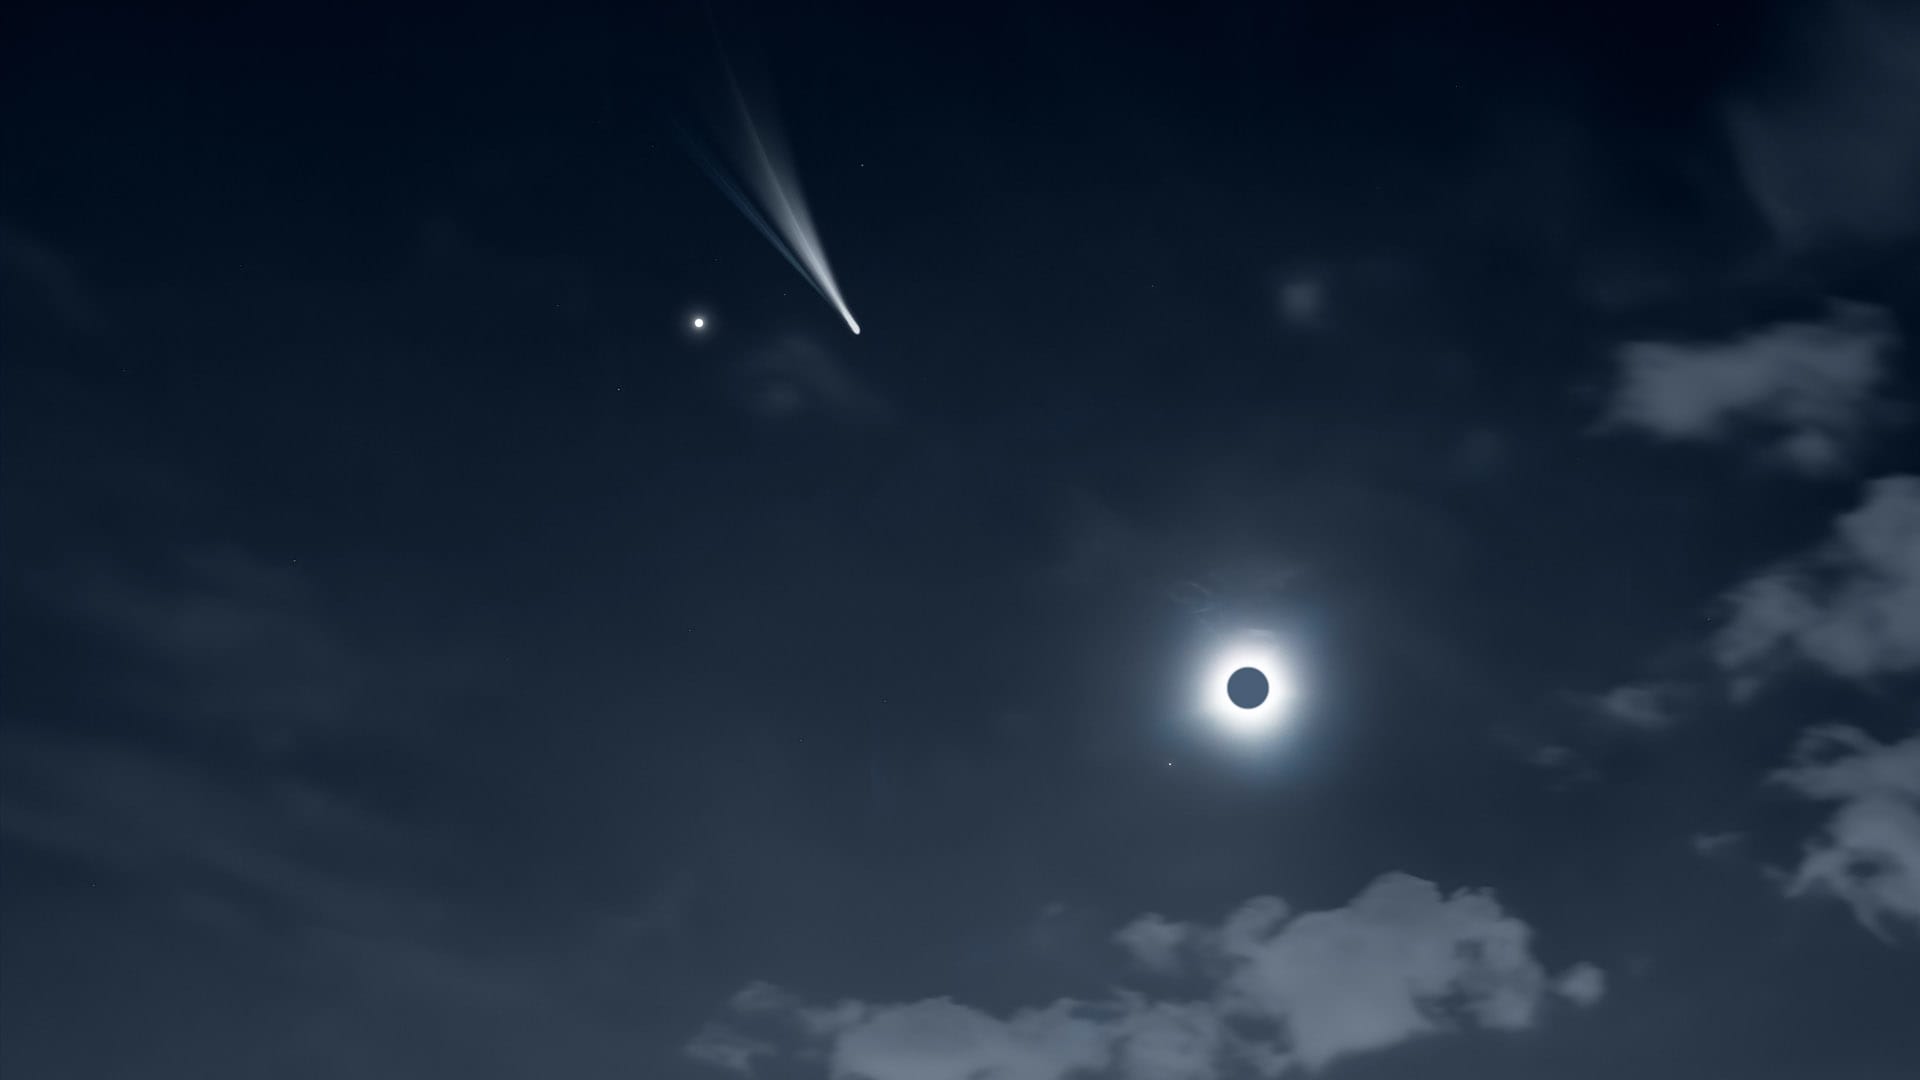 Иллюстрация полета кометы во время солнечного затмения